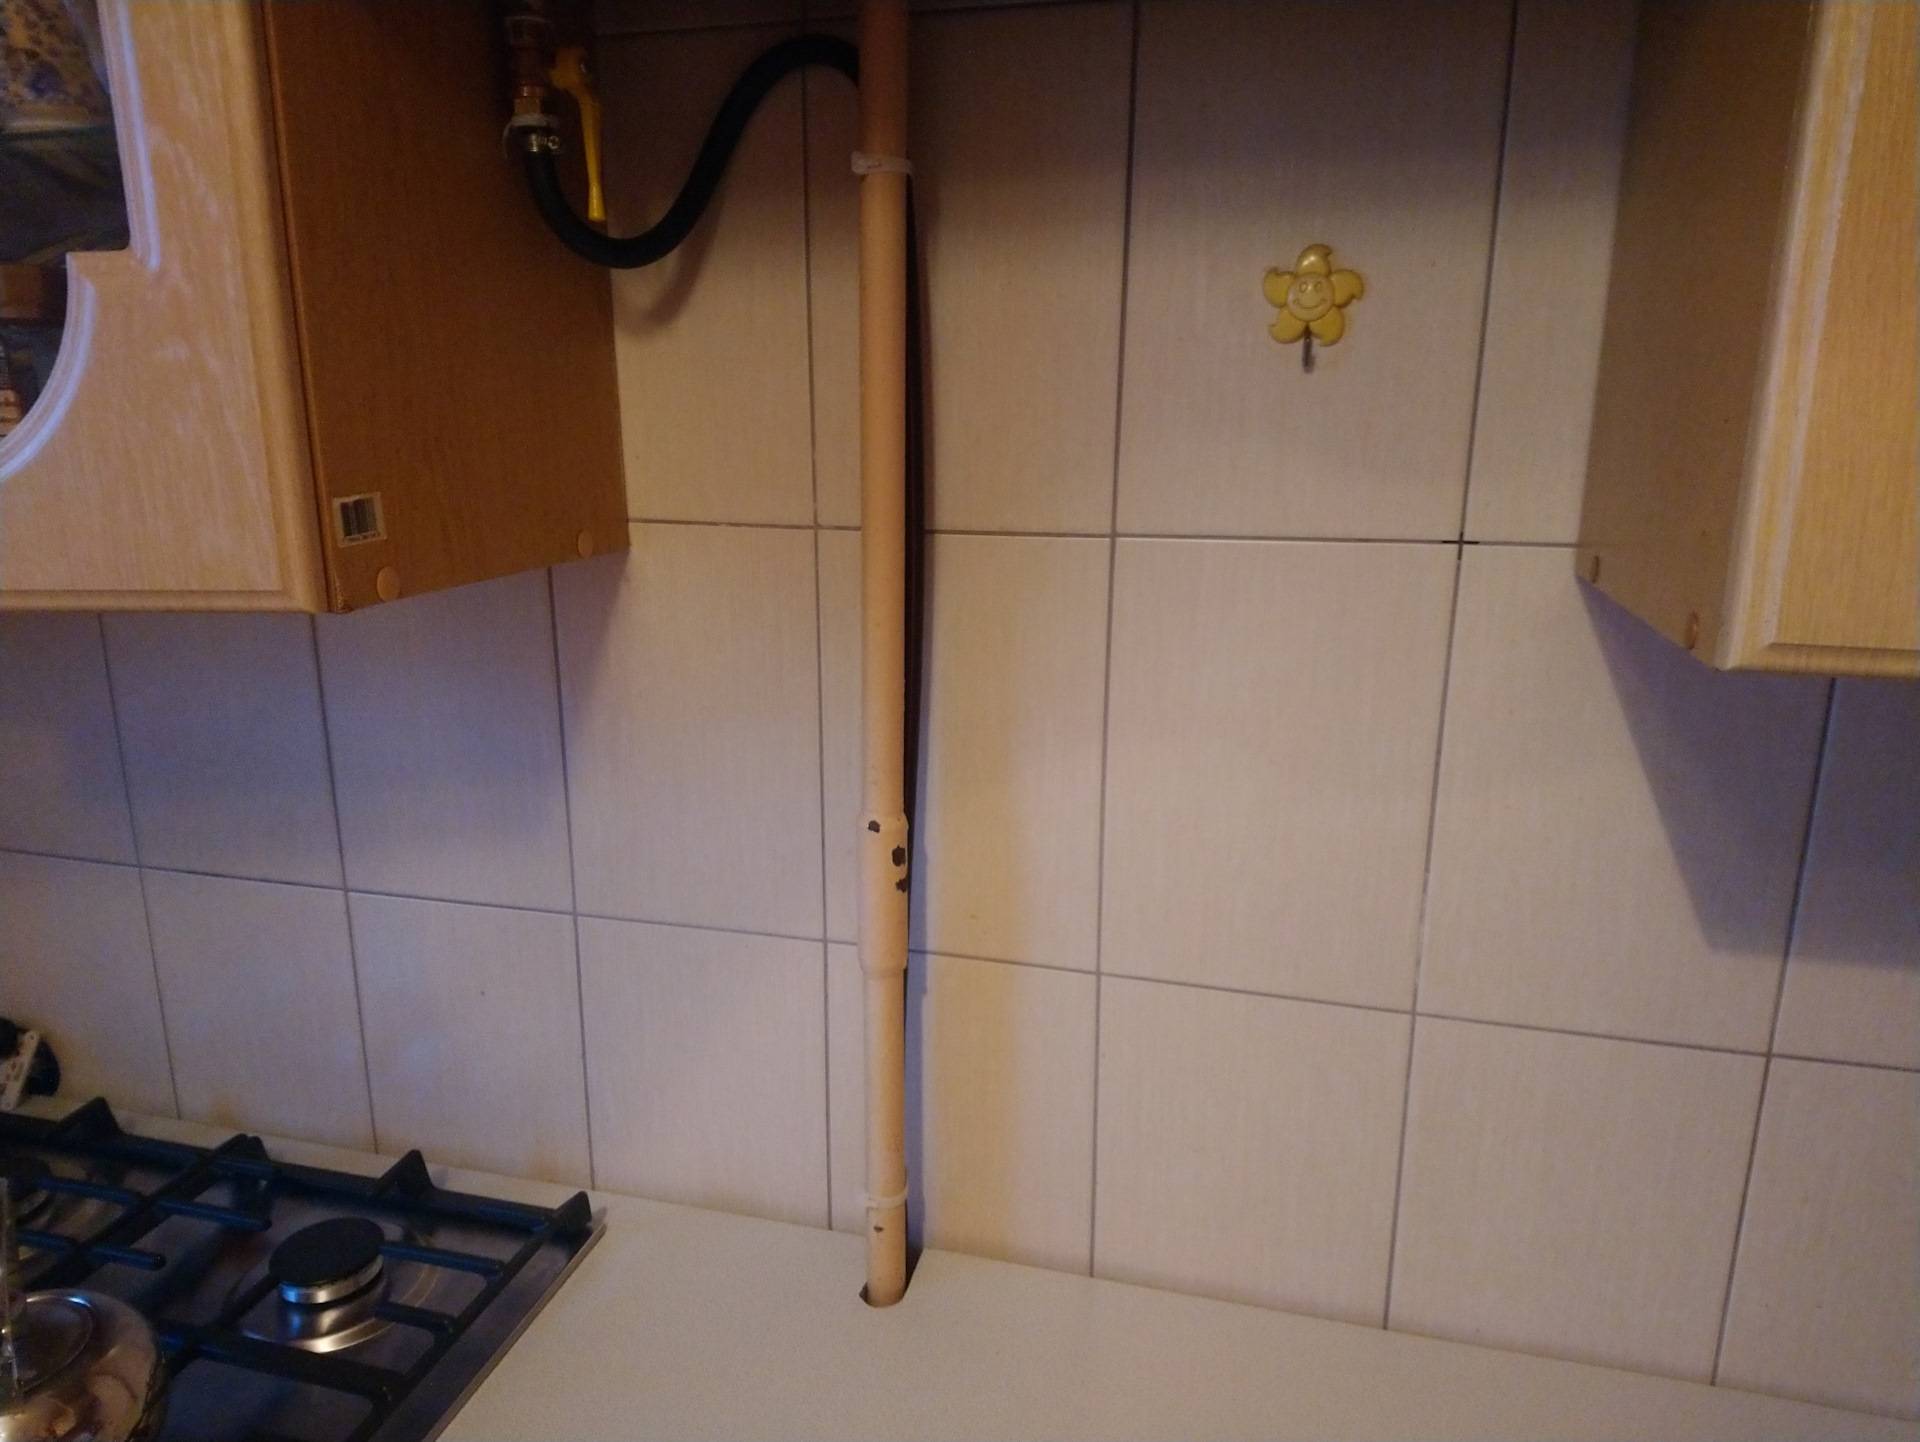 Газовая труба на кухне: как закрыть, разрешенные варианты декорирования, требования, перенос газовой трубы